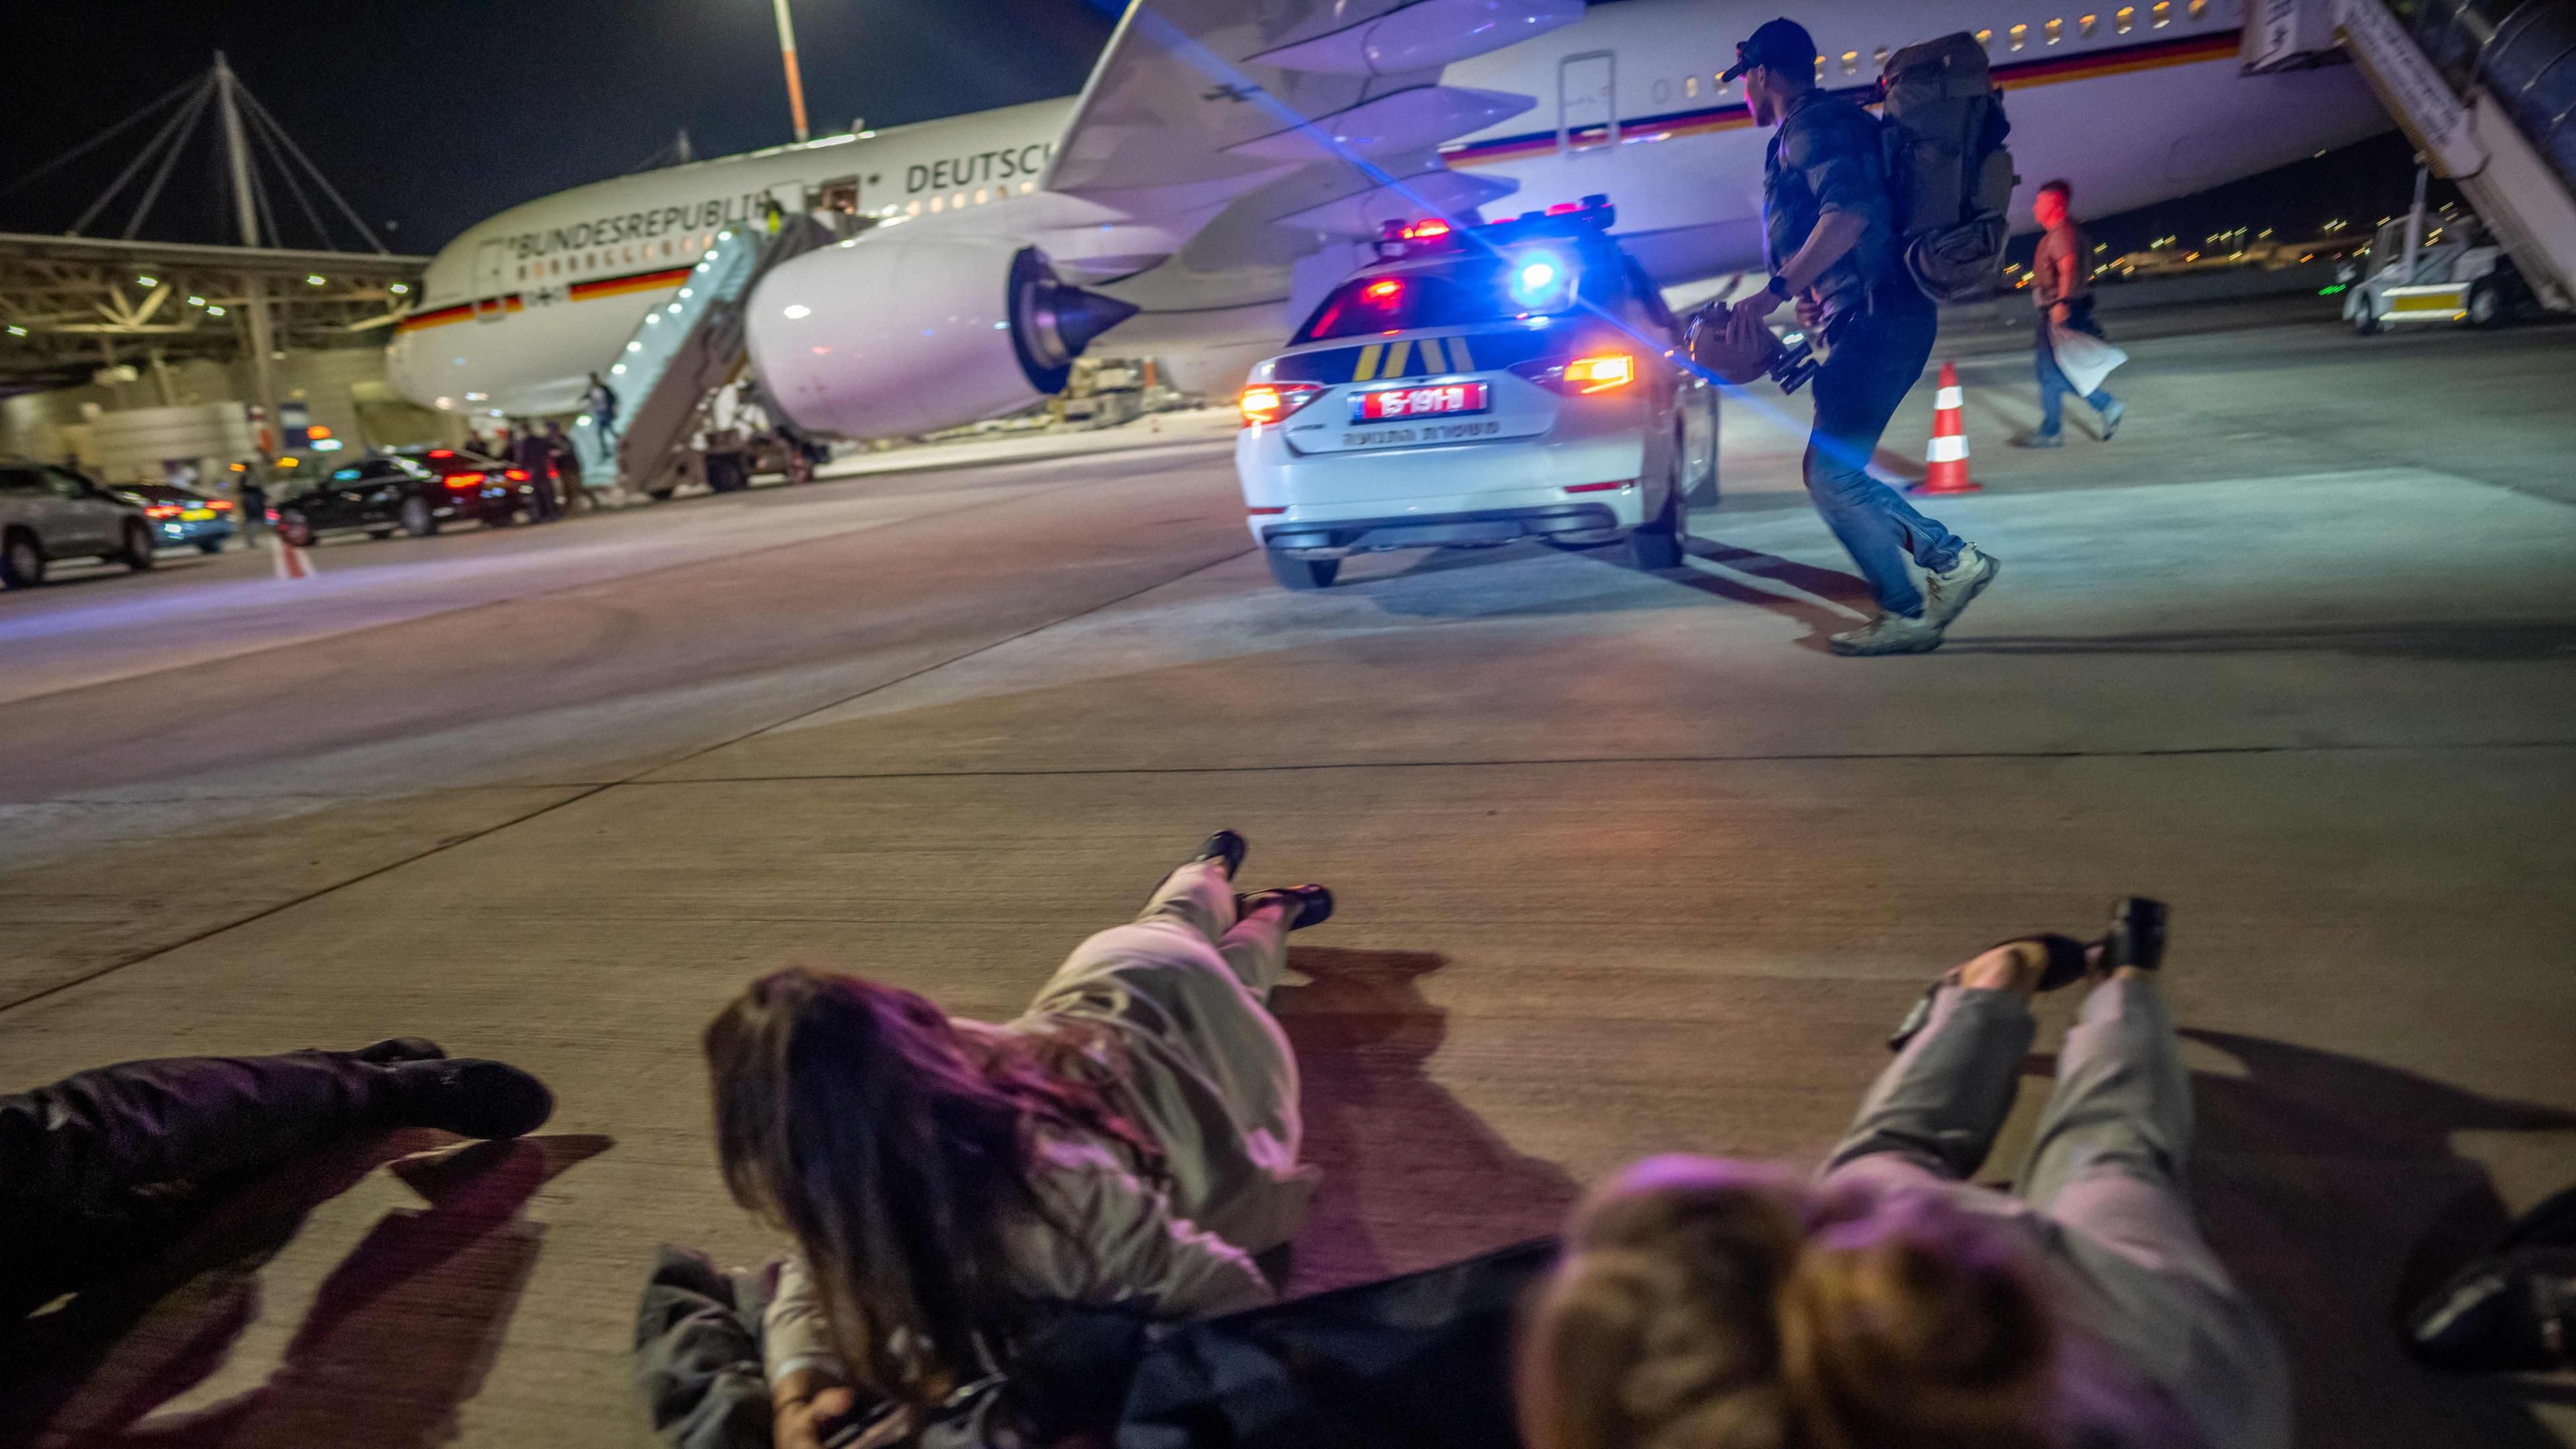 Personen liegen auf dem Flughafen von Tel Aviv vor dem Luftwaffen-Airbus von Bundeskanzler Scholz auf dem Boden.